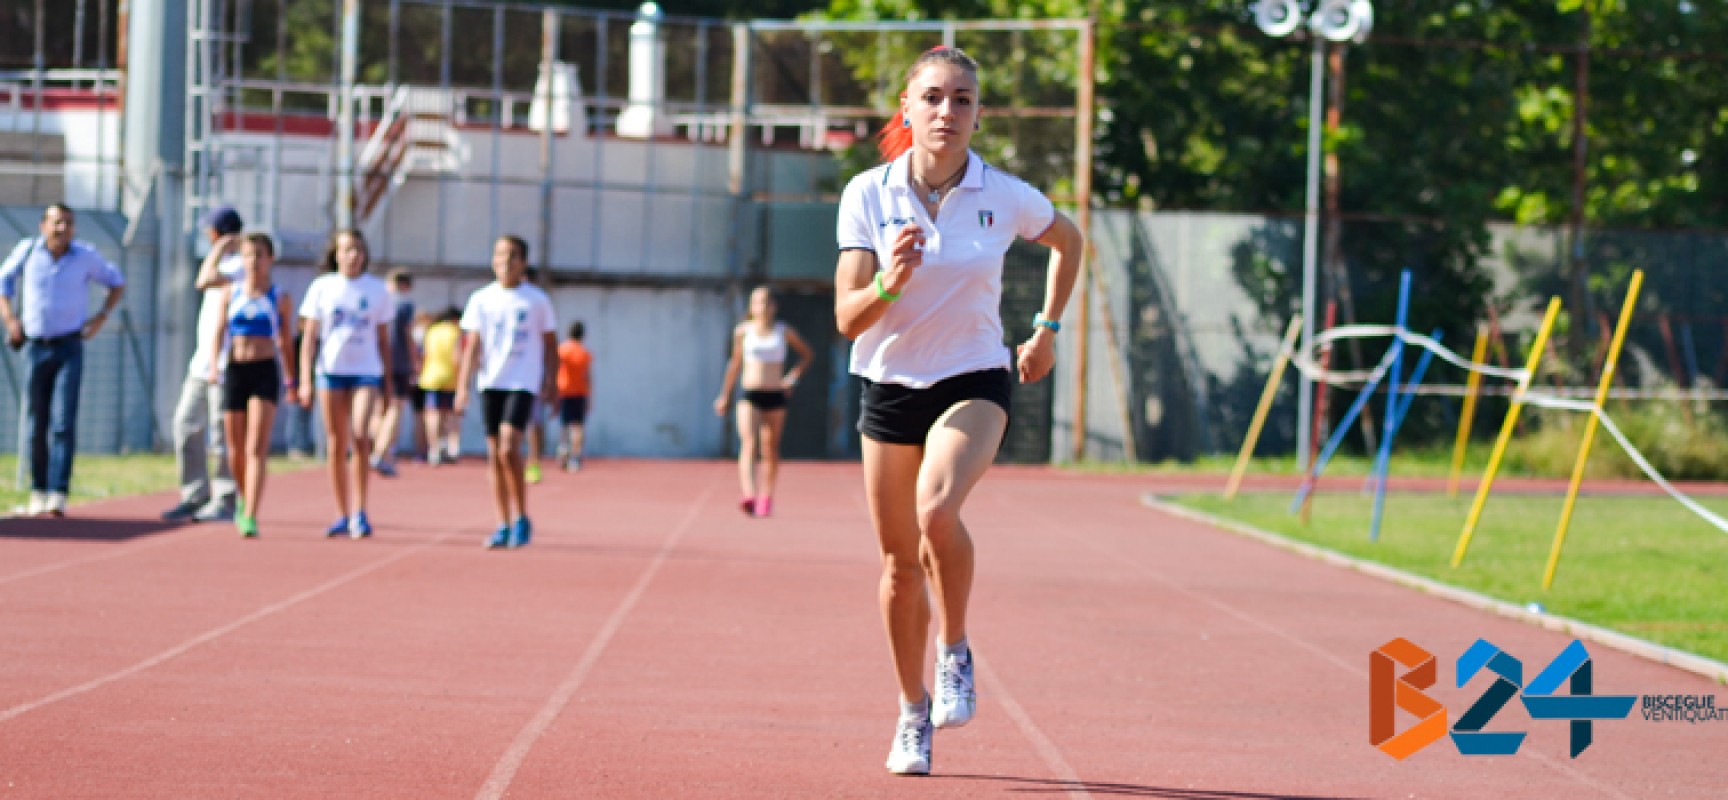 Campionati Italiani Promesse, Lucia Pasquale in finale nei 400 metri